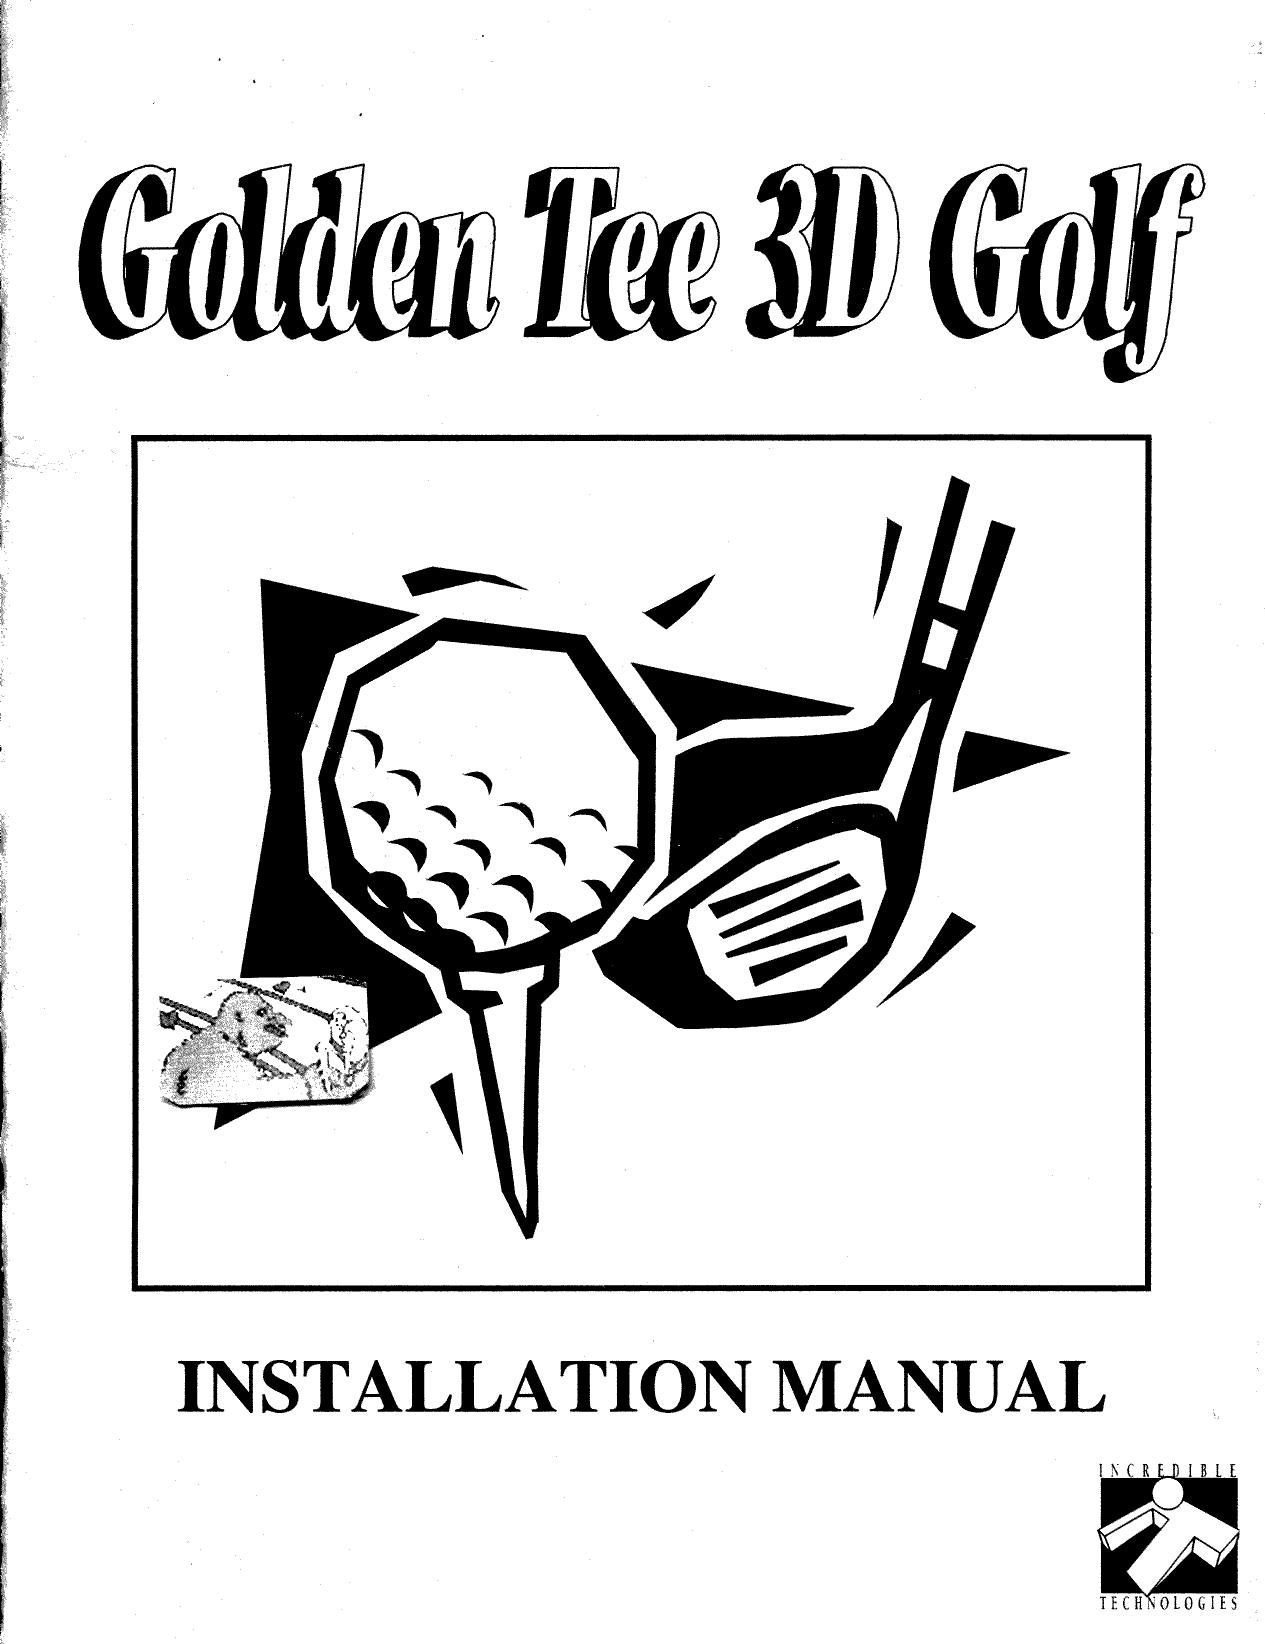 Golden Tee 3D Golf.man